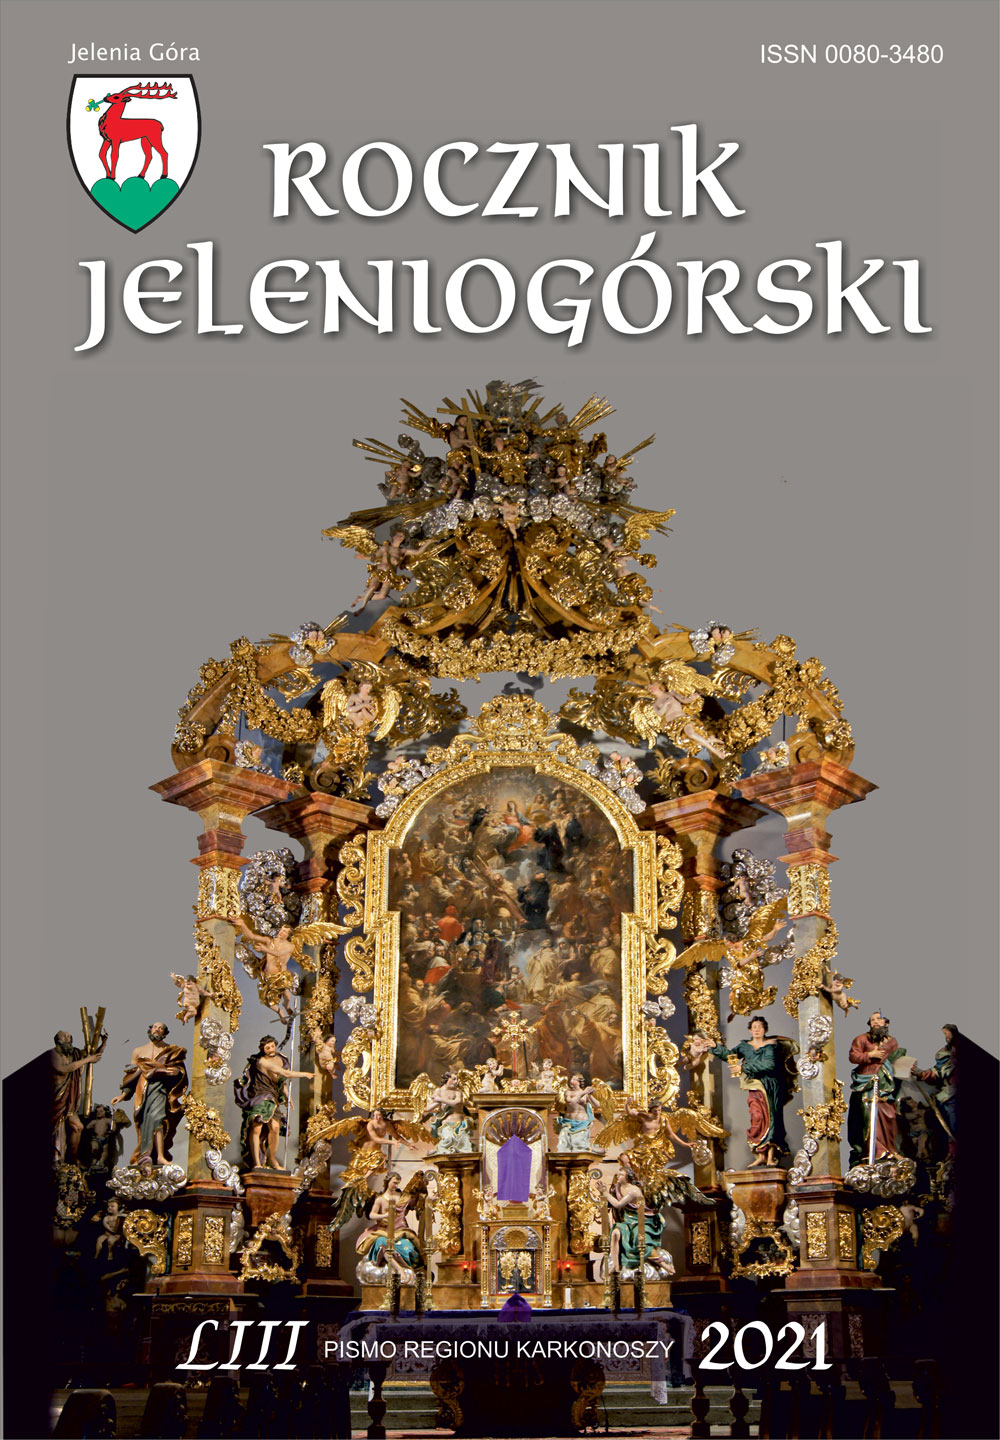 Okładka Rocznika Jeleniogórskiego 2021 przedstawia ołtarz główny w kościele Św. Jana Chrzciciela w Cieplicach